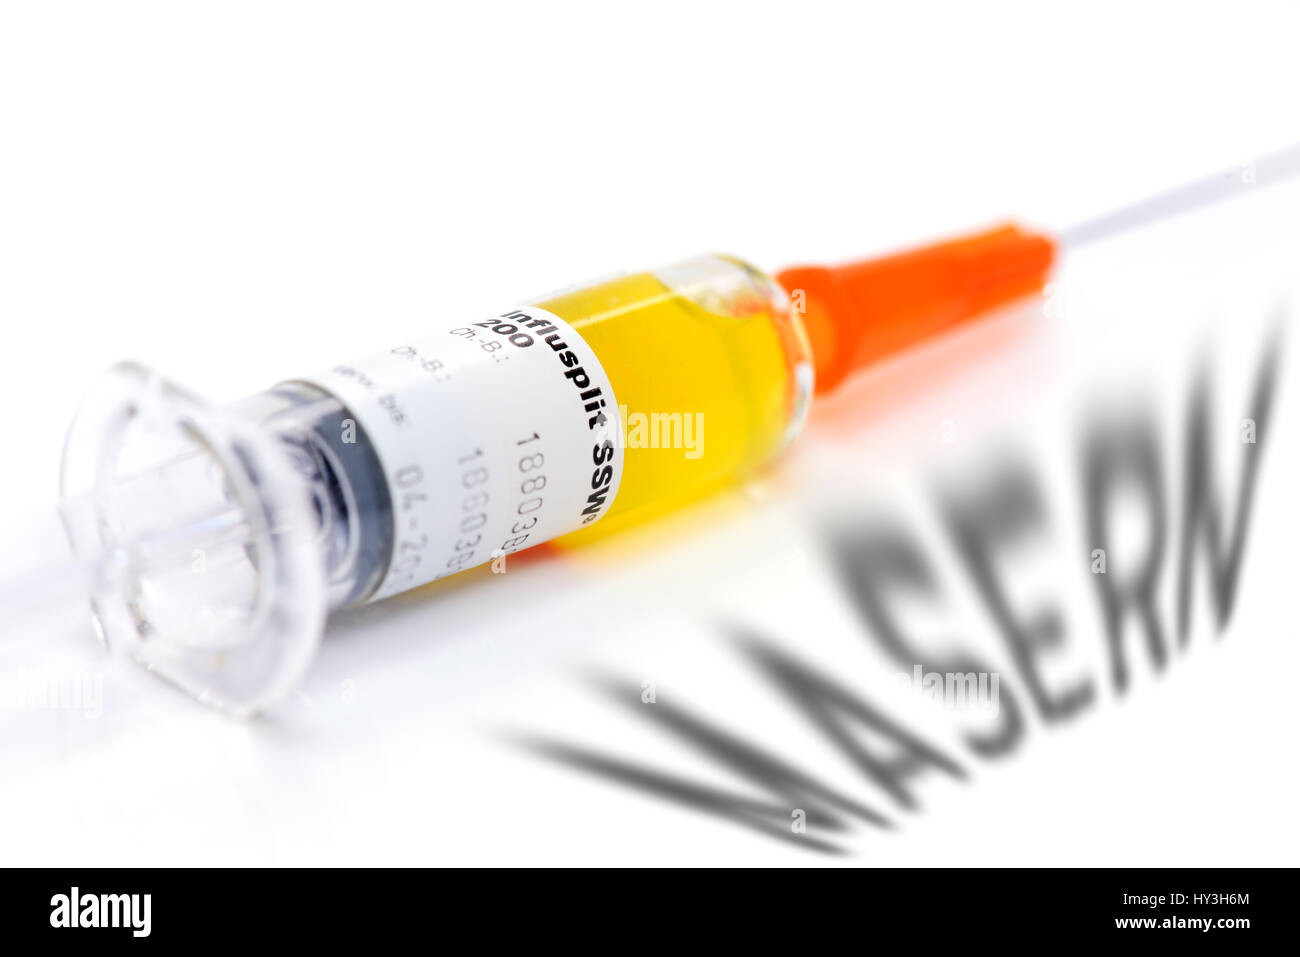 Vaccination syringe and curl stroke, vaccination against measles, Impfspritze und Masern-Schriftzug, Impfung gegen Masern Stock Photo